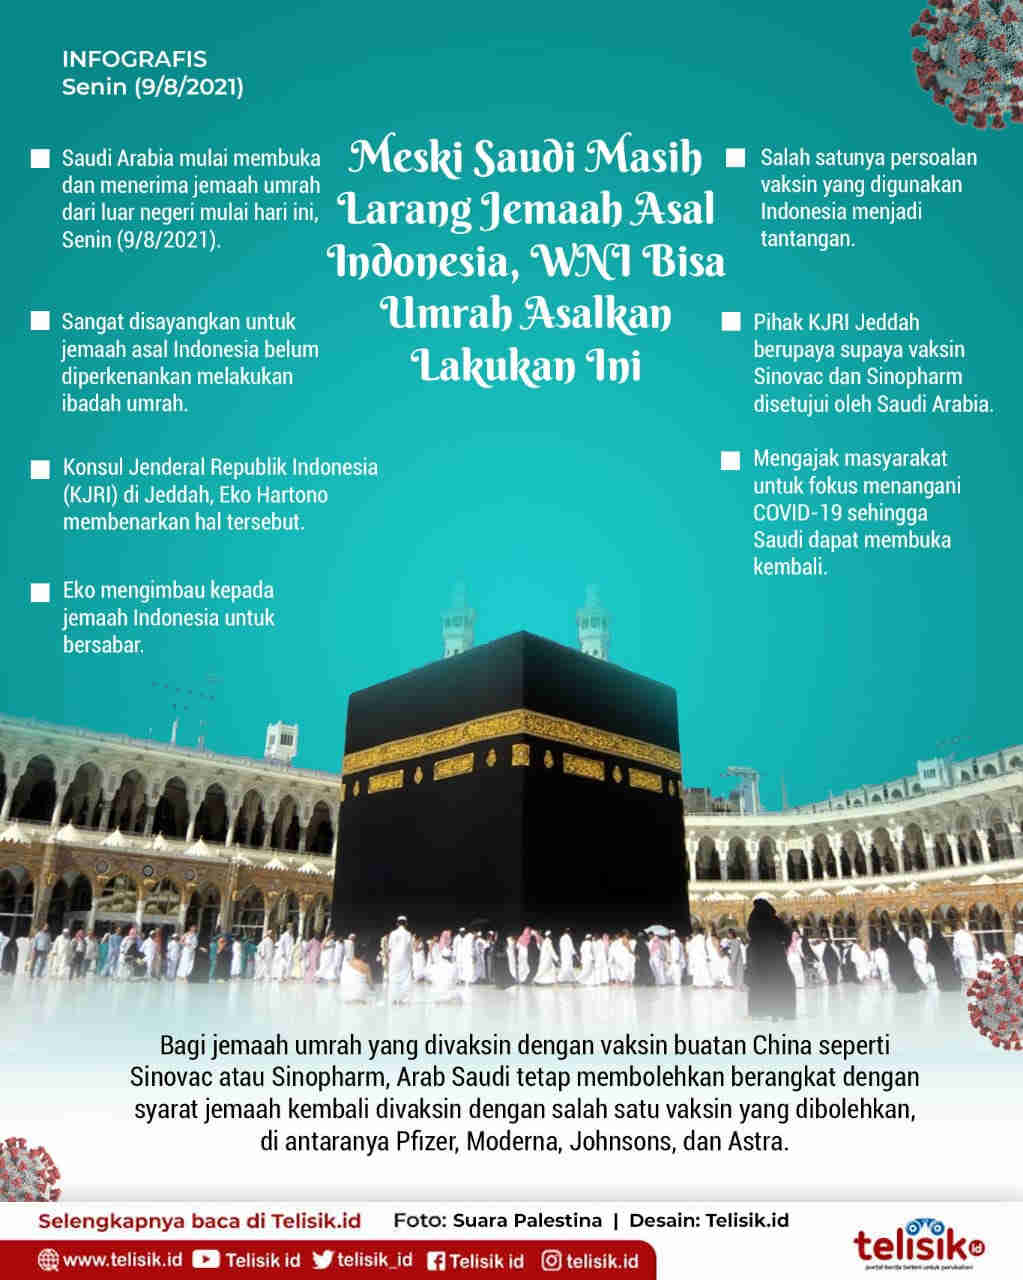 Infografis: Meski Saudi Masih Larang Jemaah Asal Indonesia, WNI Bisa Umrah Asal Lakukan Ini